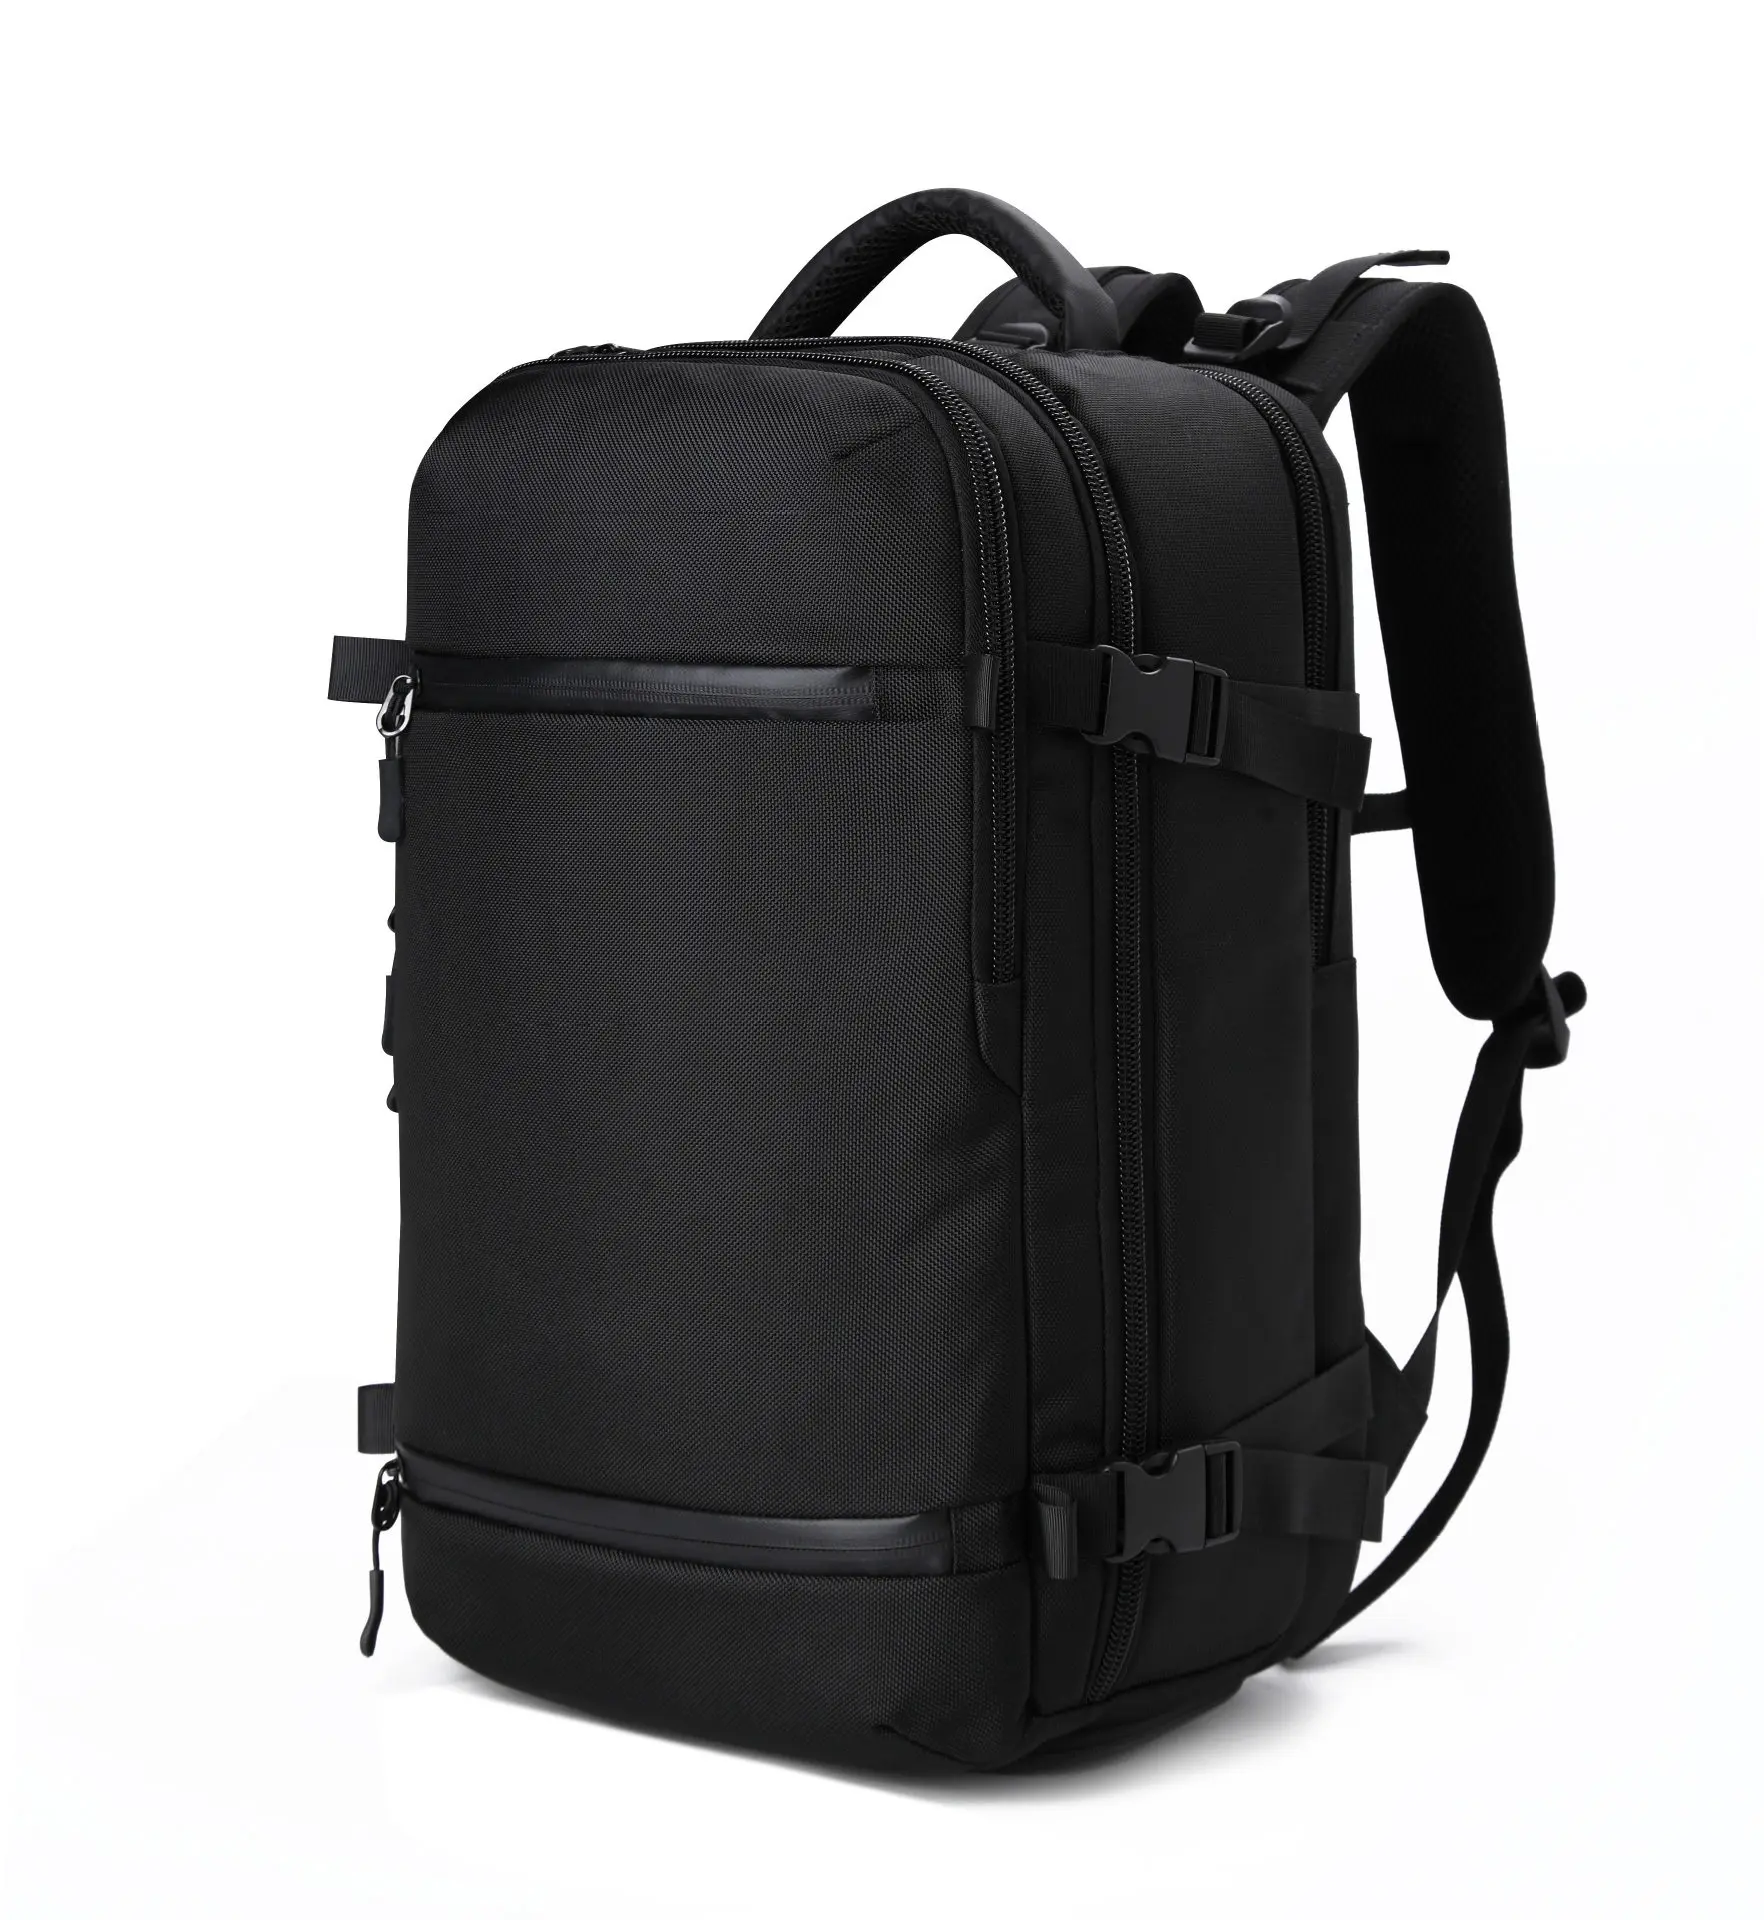 OZUKO USB рюкзак для мужчин Дорожная сумка мужской чемодан бизнес рюкзак большой емкости водонепроницаемый рюкзак для ноутбука с сумкой для обуви - Цвет: black